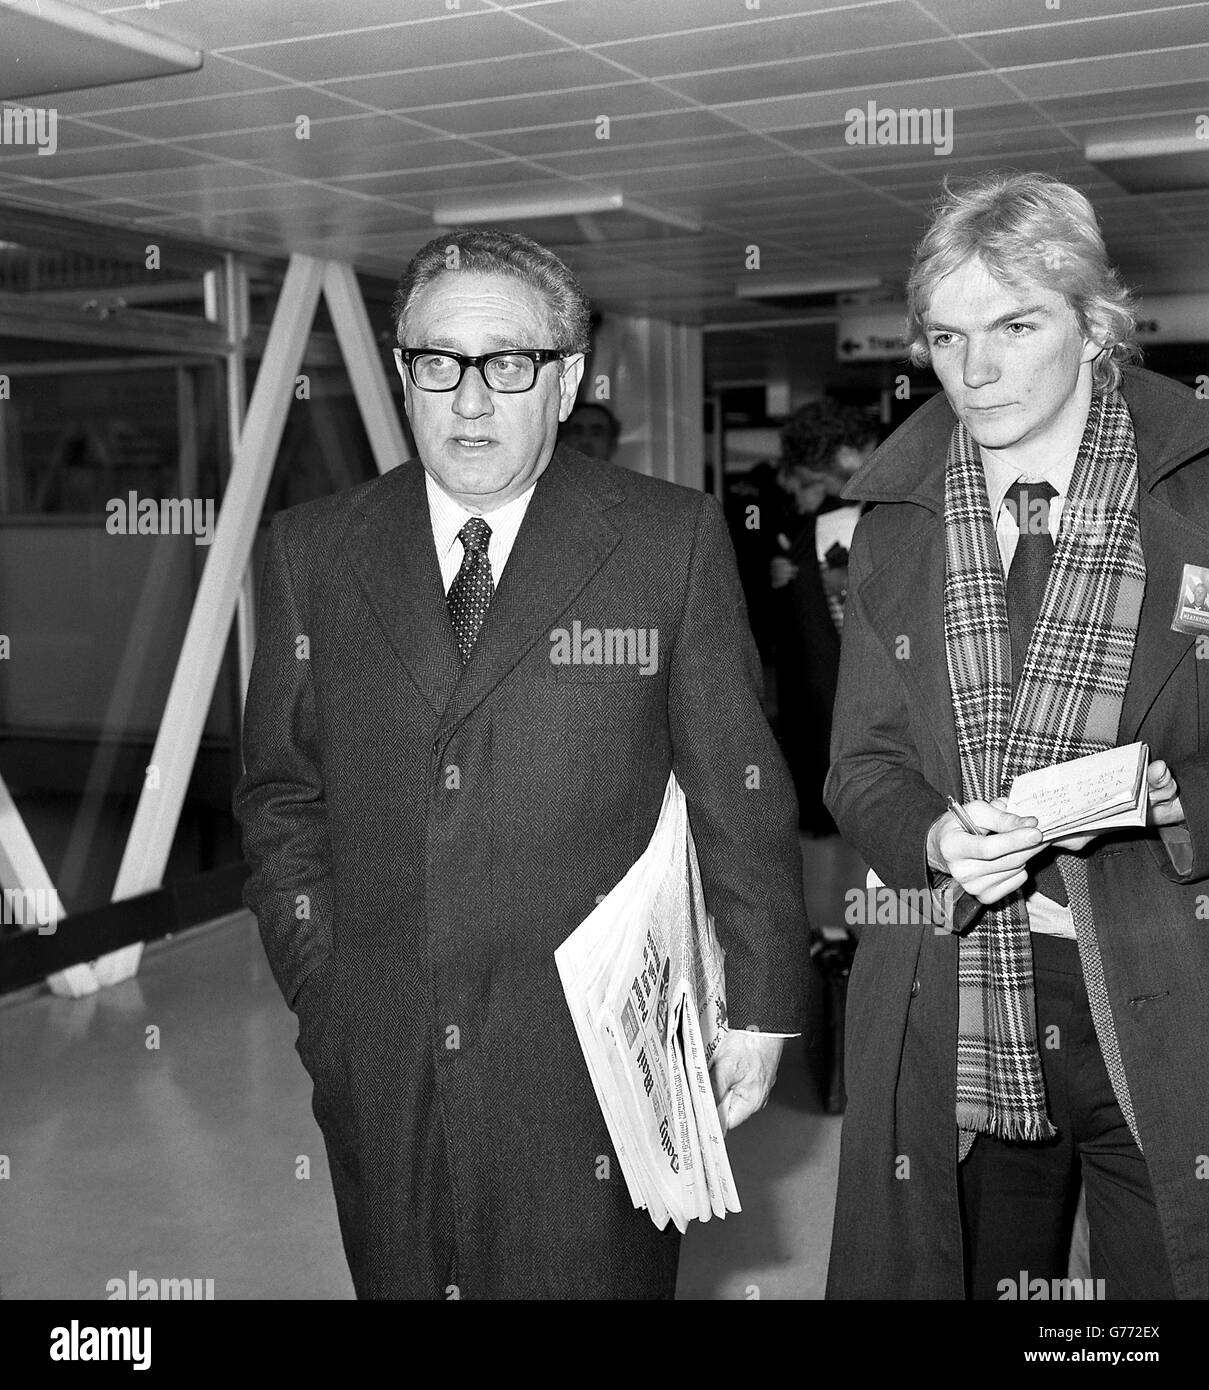 Dr. Henry Kissinger, der ehemalige amerikanische Staatssekretär am Flughafen Heathrow, London, bevor er heute mit concorde nach New York flog. Der Weltenbummler war zu privaten Treffen mit Premierminister Margaret Thatcher und Außenminister Lord Carrington in London. Stockfoto